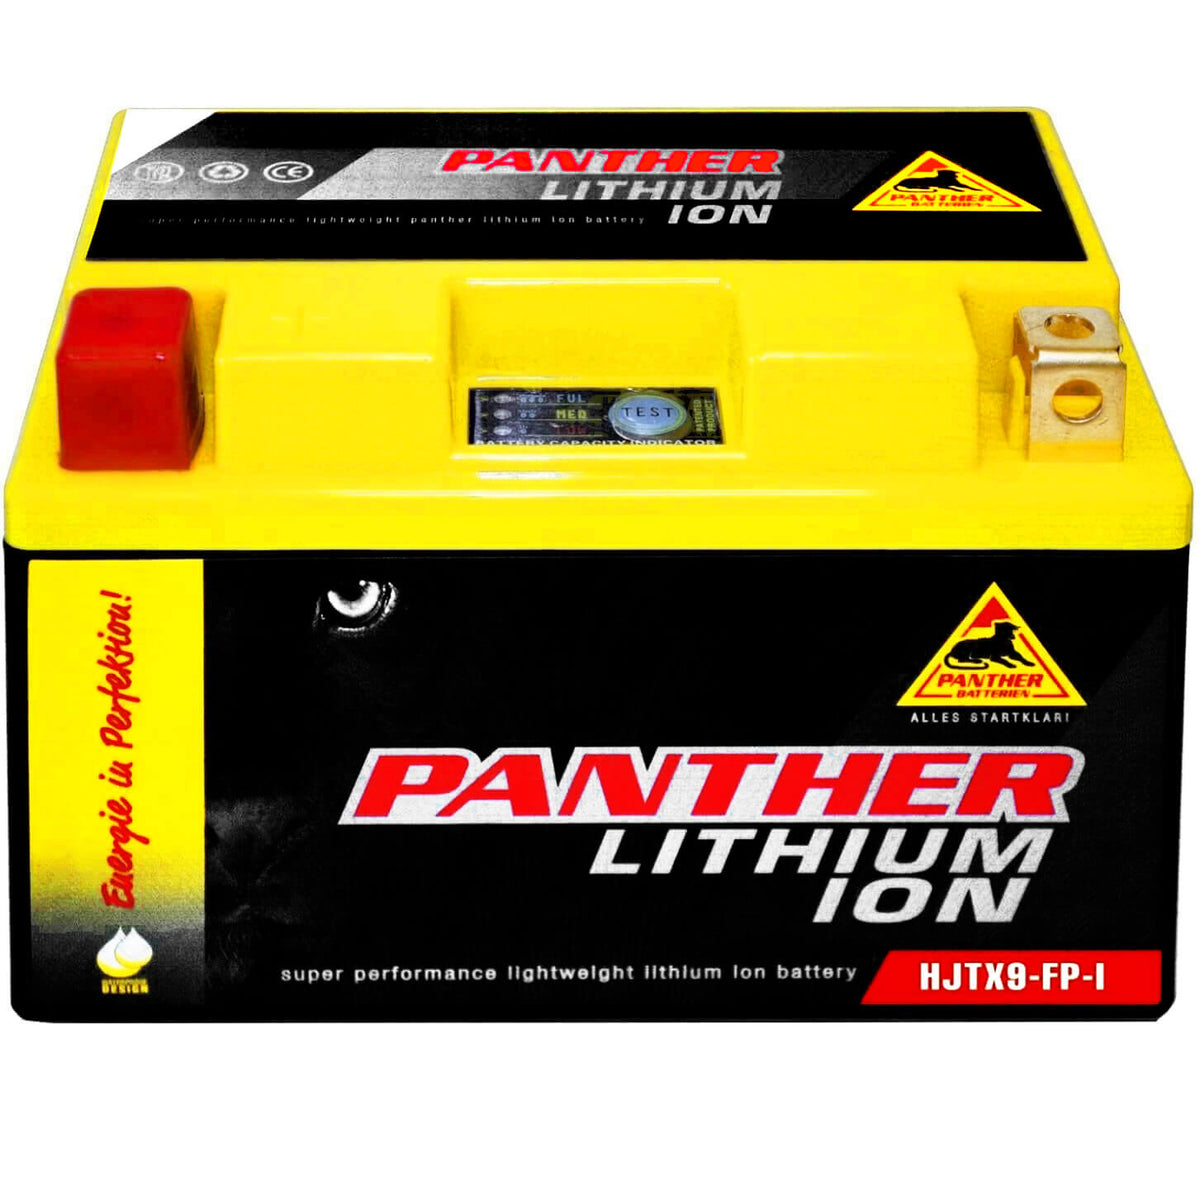 Panther Motorrad HJTX9 Lithium Ion 12V 9Ah 180A/EN Motorradbatterie